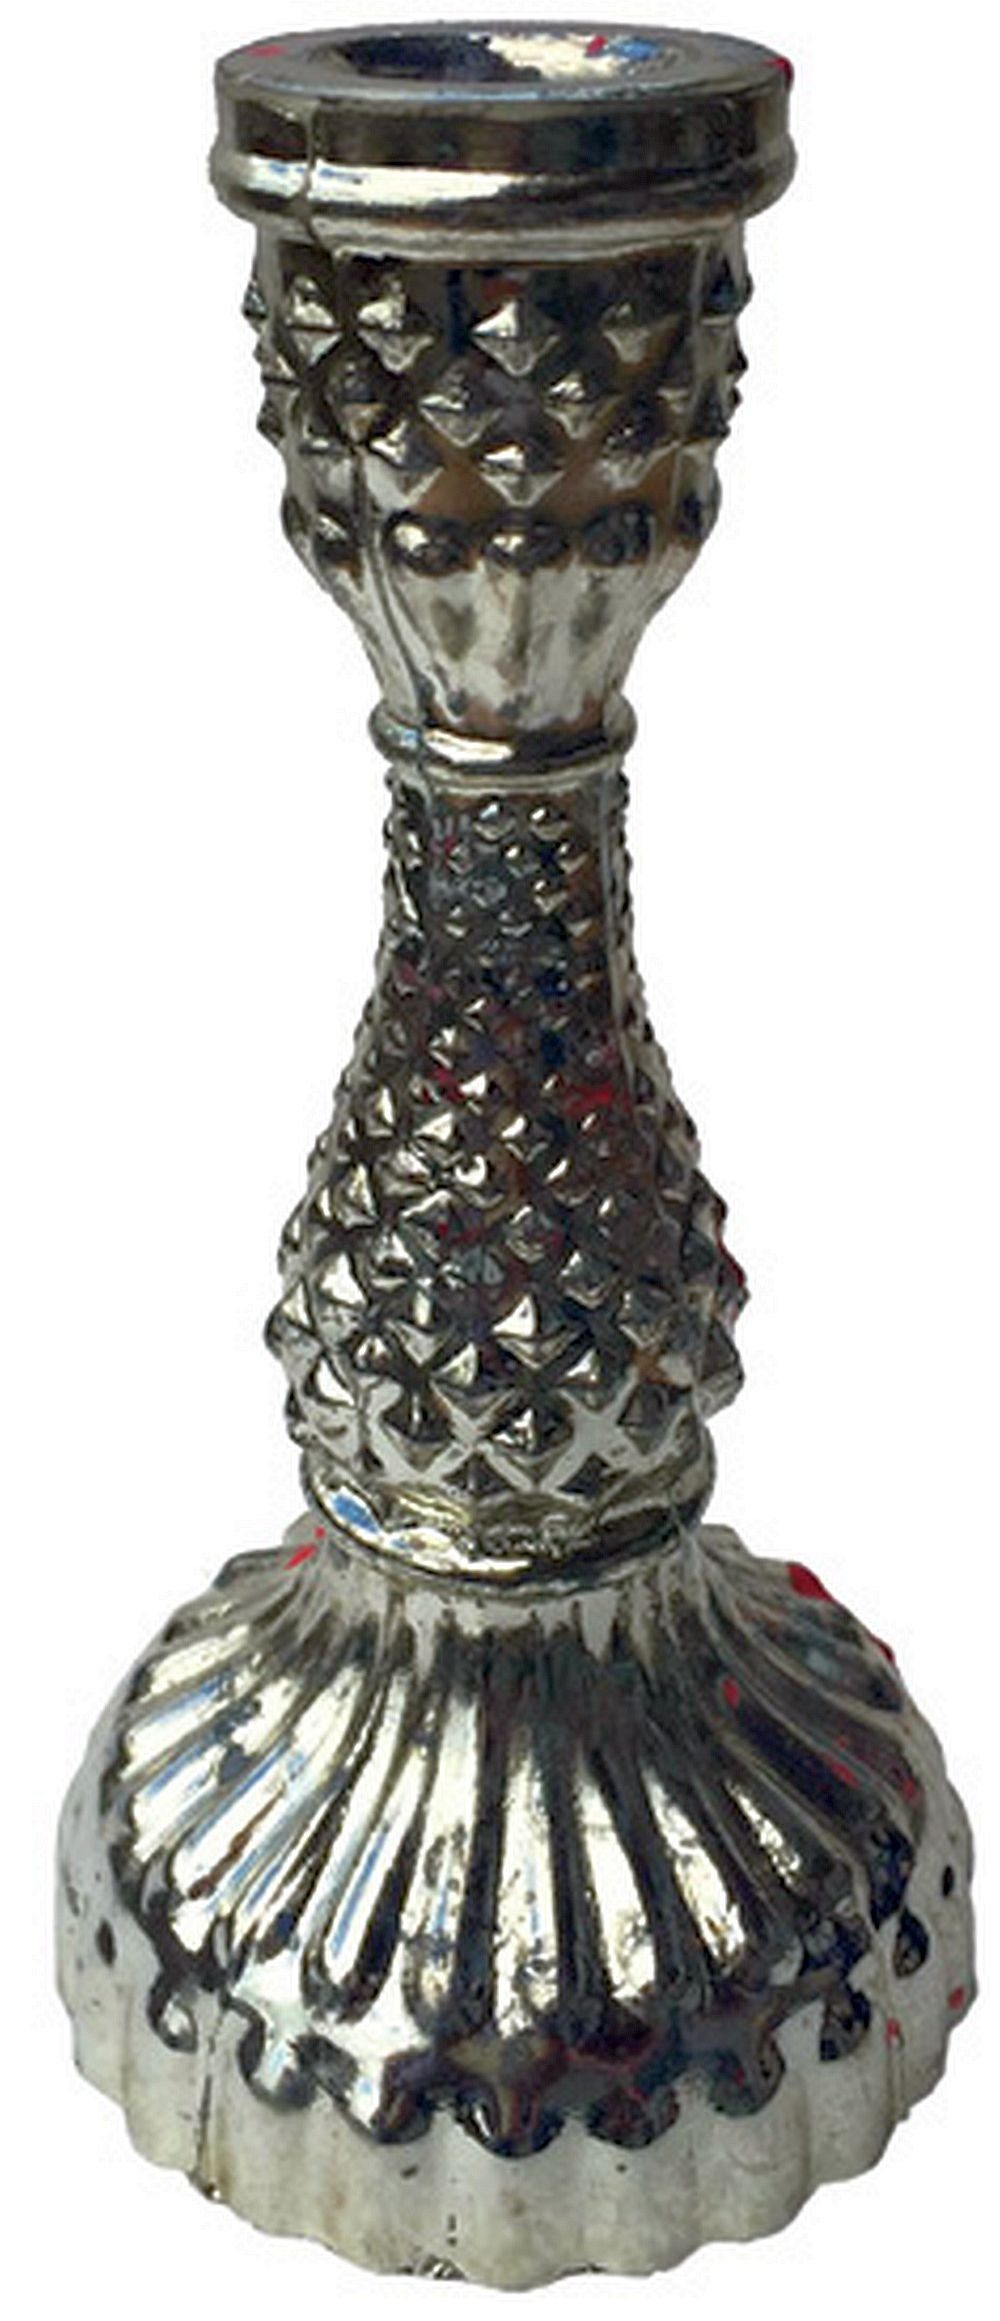 Feliwa Antiksilber cm 16,5 Glas Kerzenständer Kerzenleuchter Feliwa